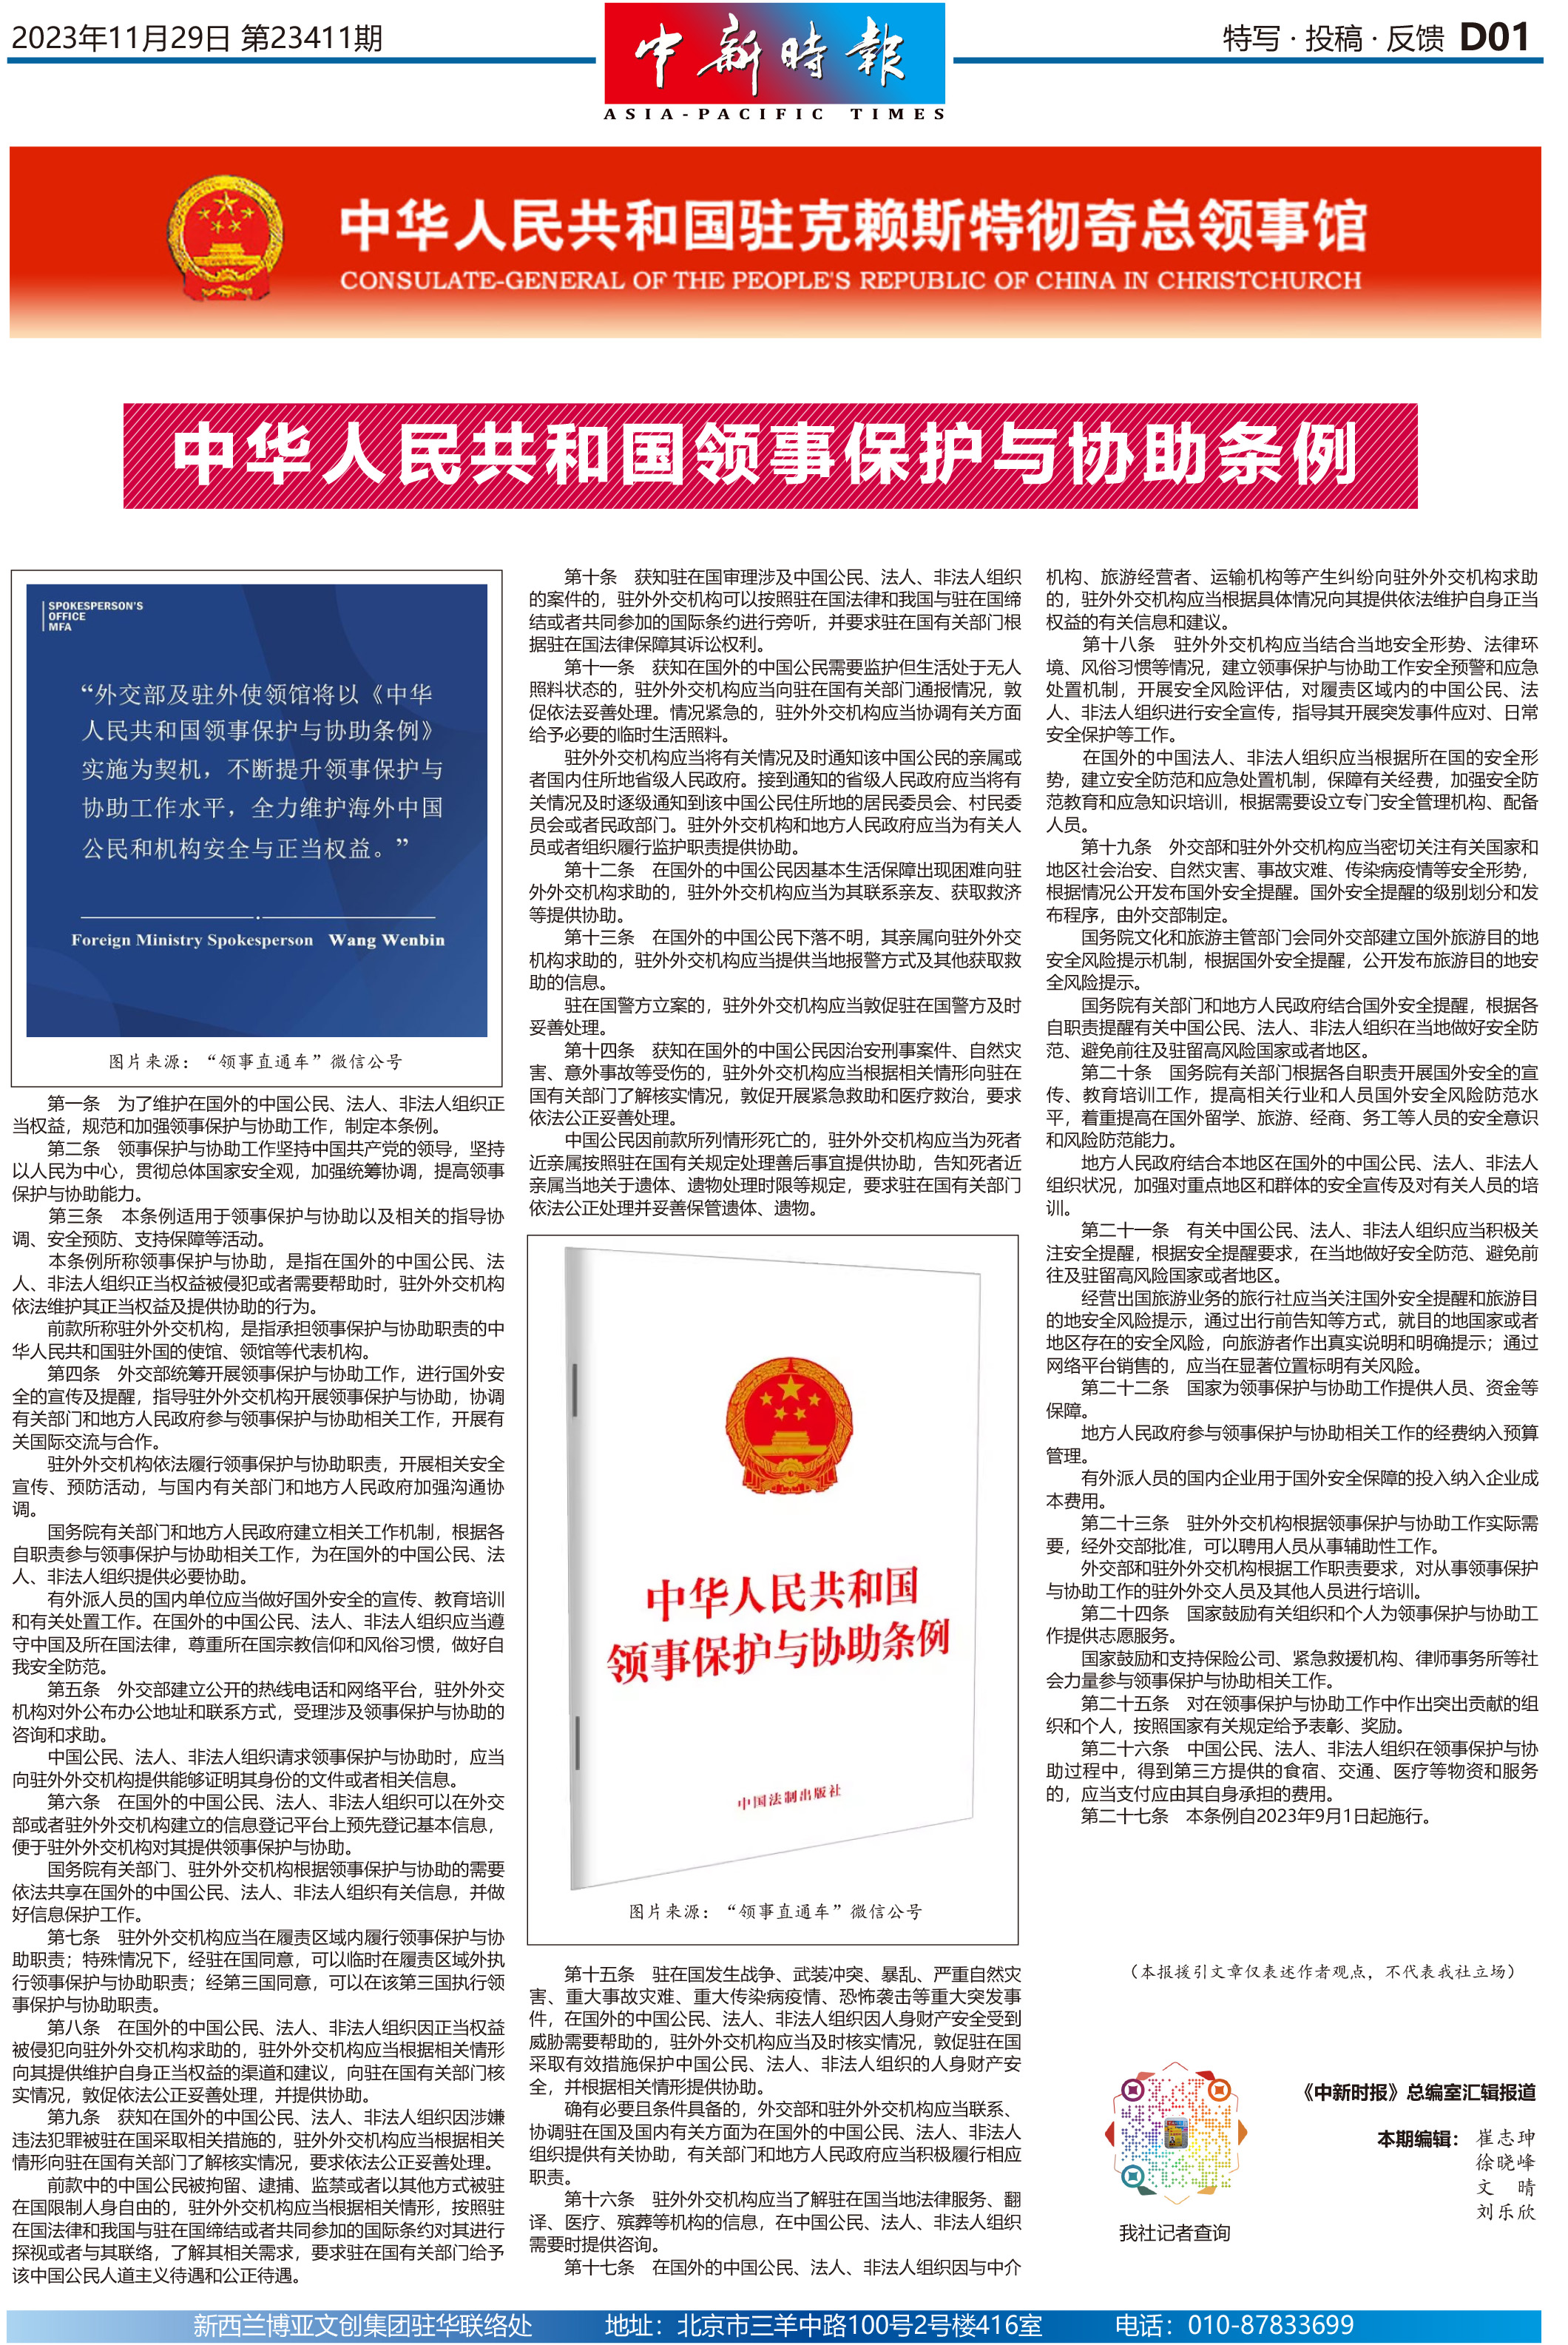 中华人民共和国领事保护与协助条例